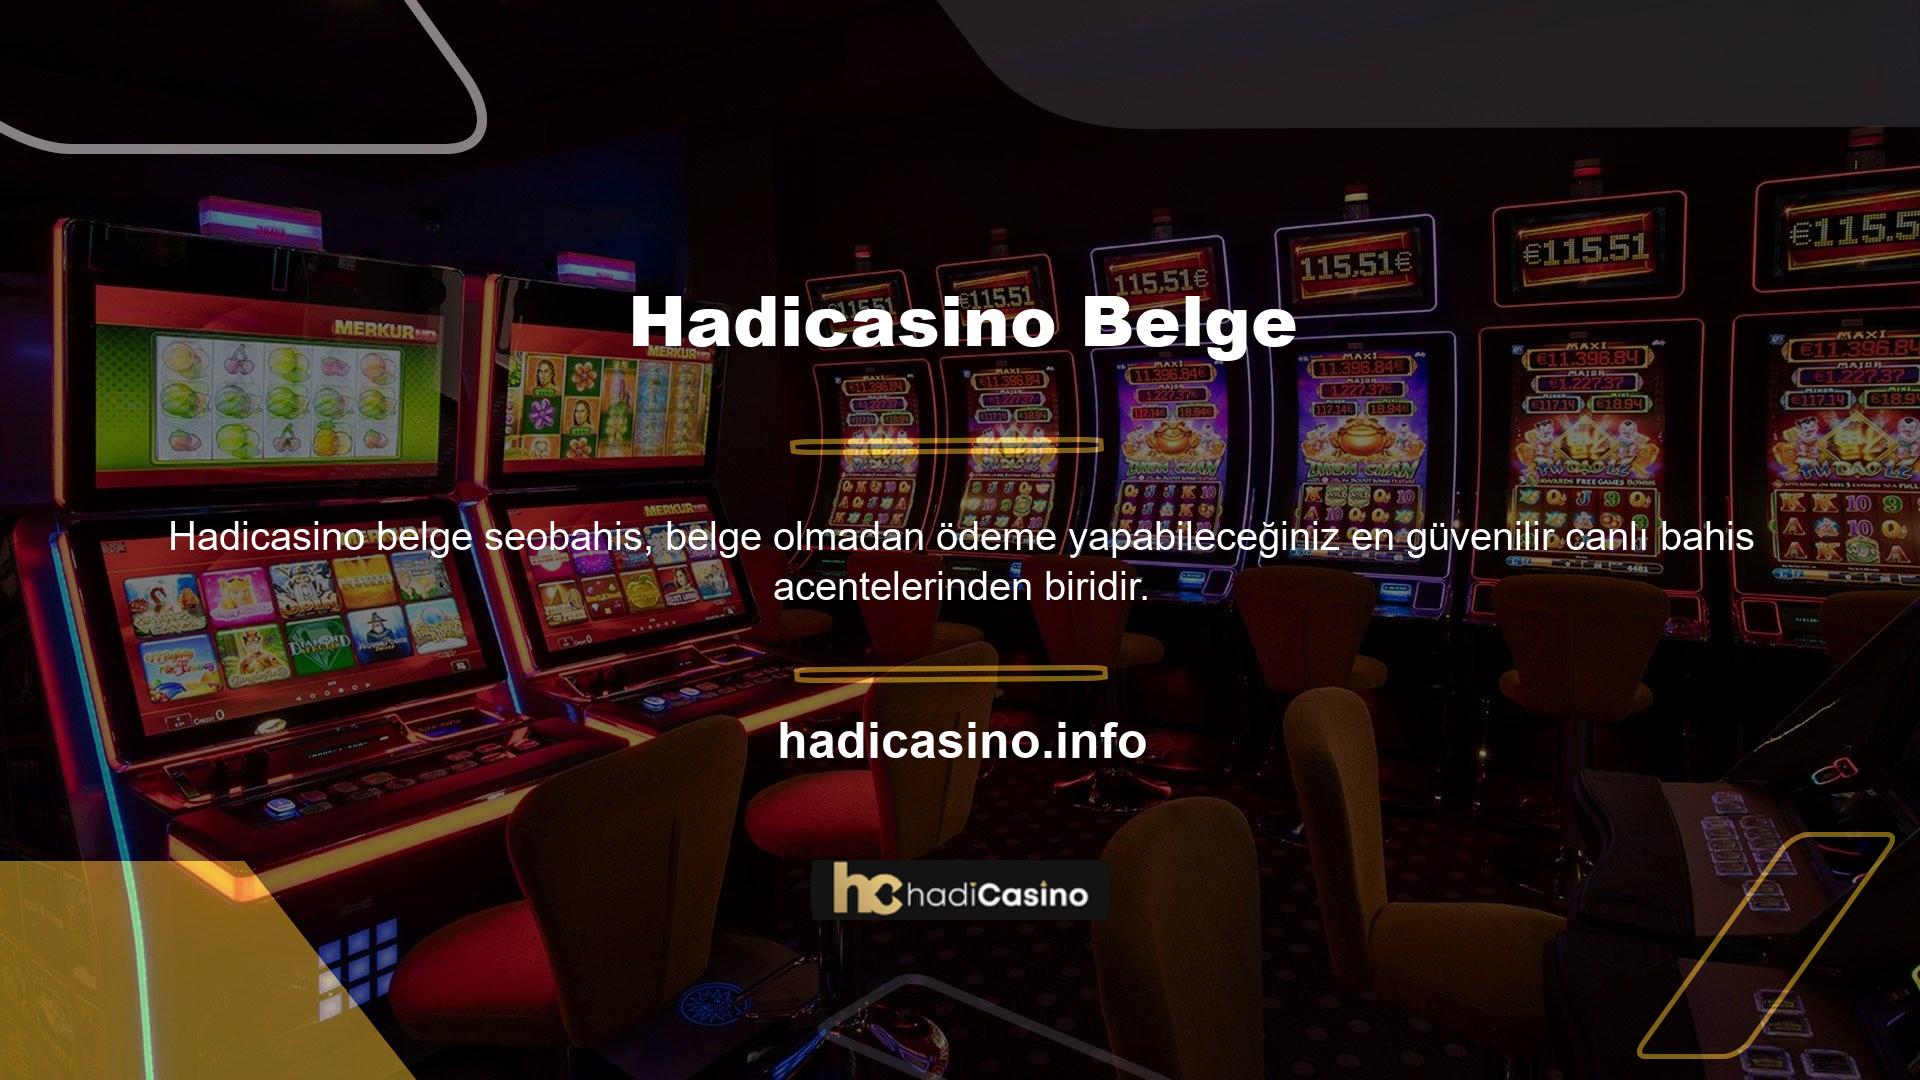 Bazı casino web siteleri, üyelerin kimlik bilgilerini veya makbuzlarının bir kopyasını sağlamalarını gerektirir